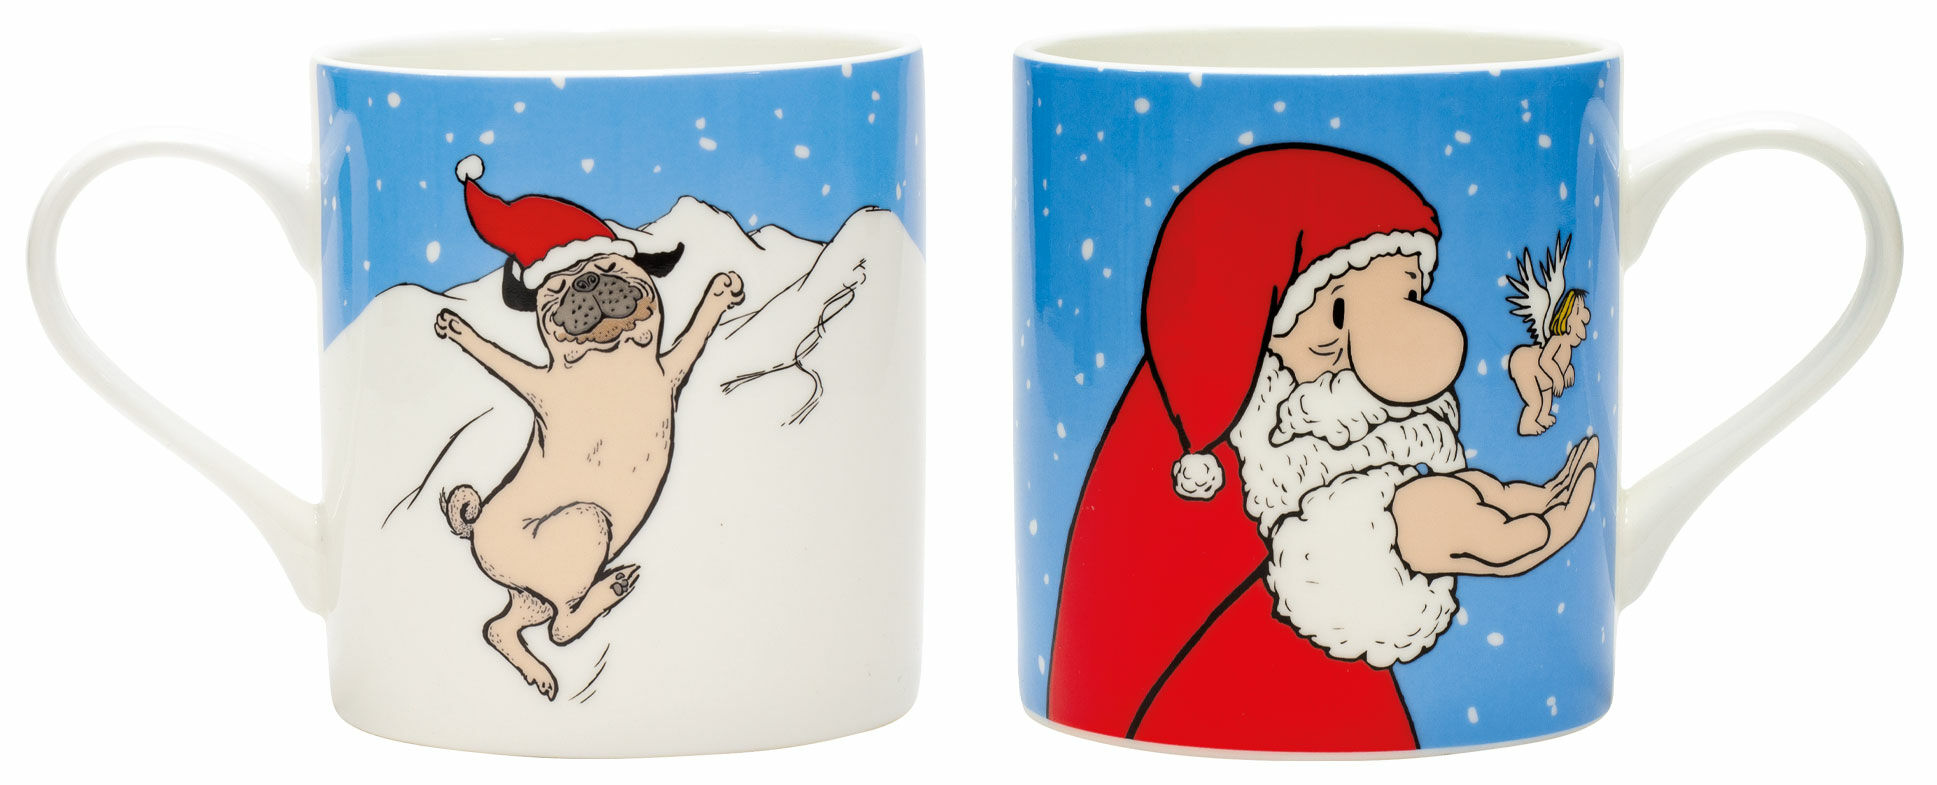 Set om 2 muggar med konstnärens motiv "Christmas Pug" & "Santa Claus", porslin von Loriot